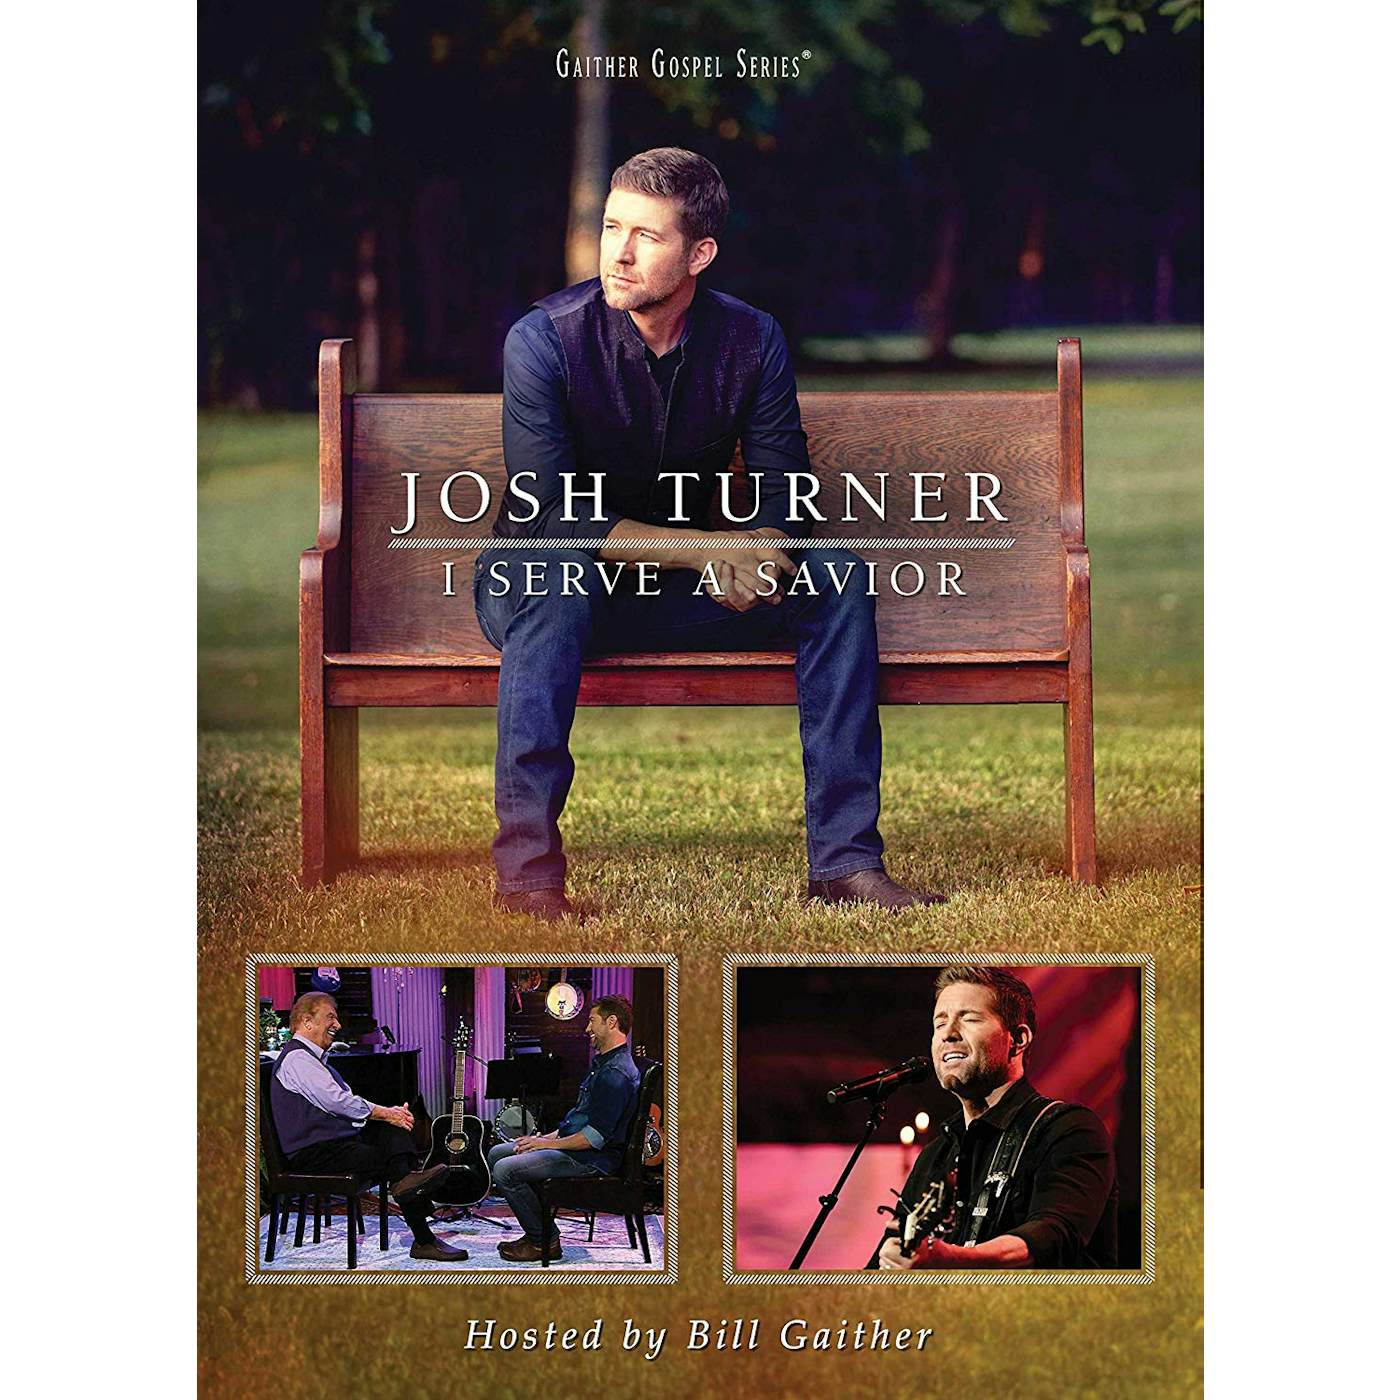 Josh Turner I SERVE A SAVIOR DVD